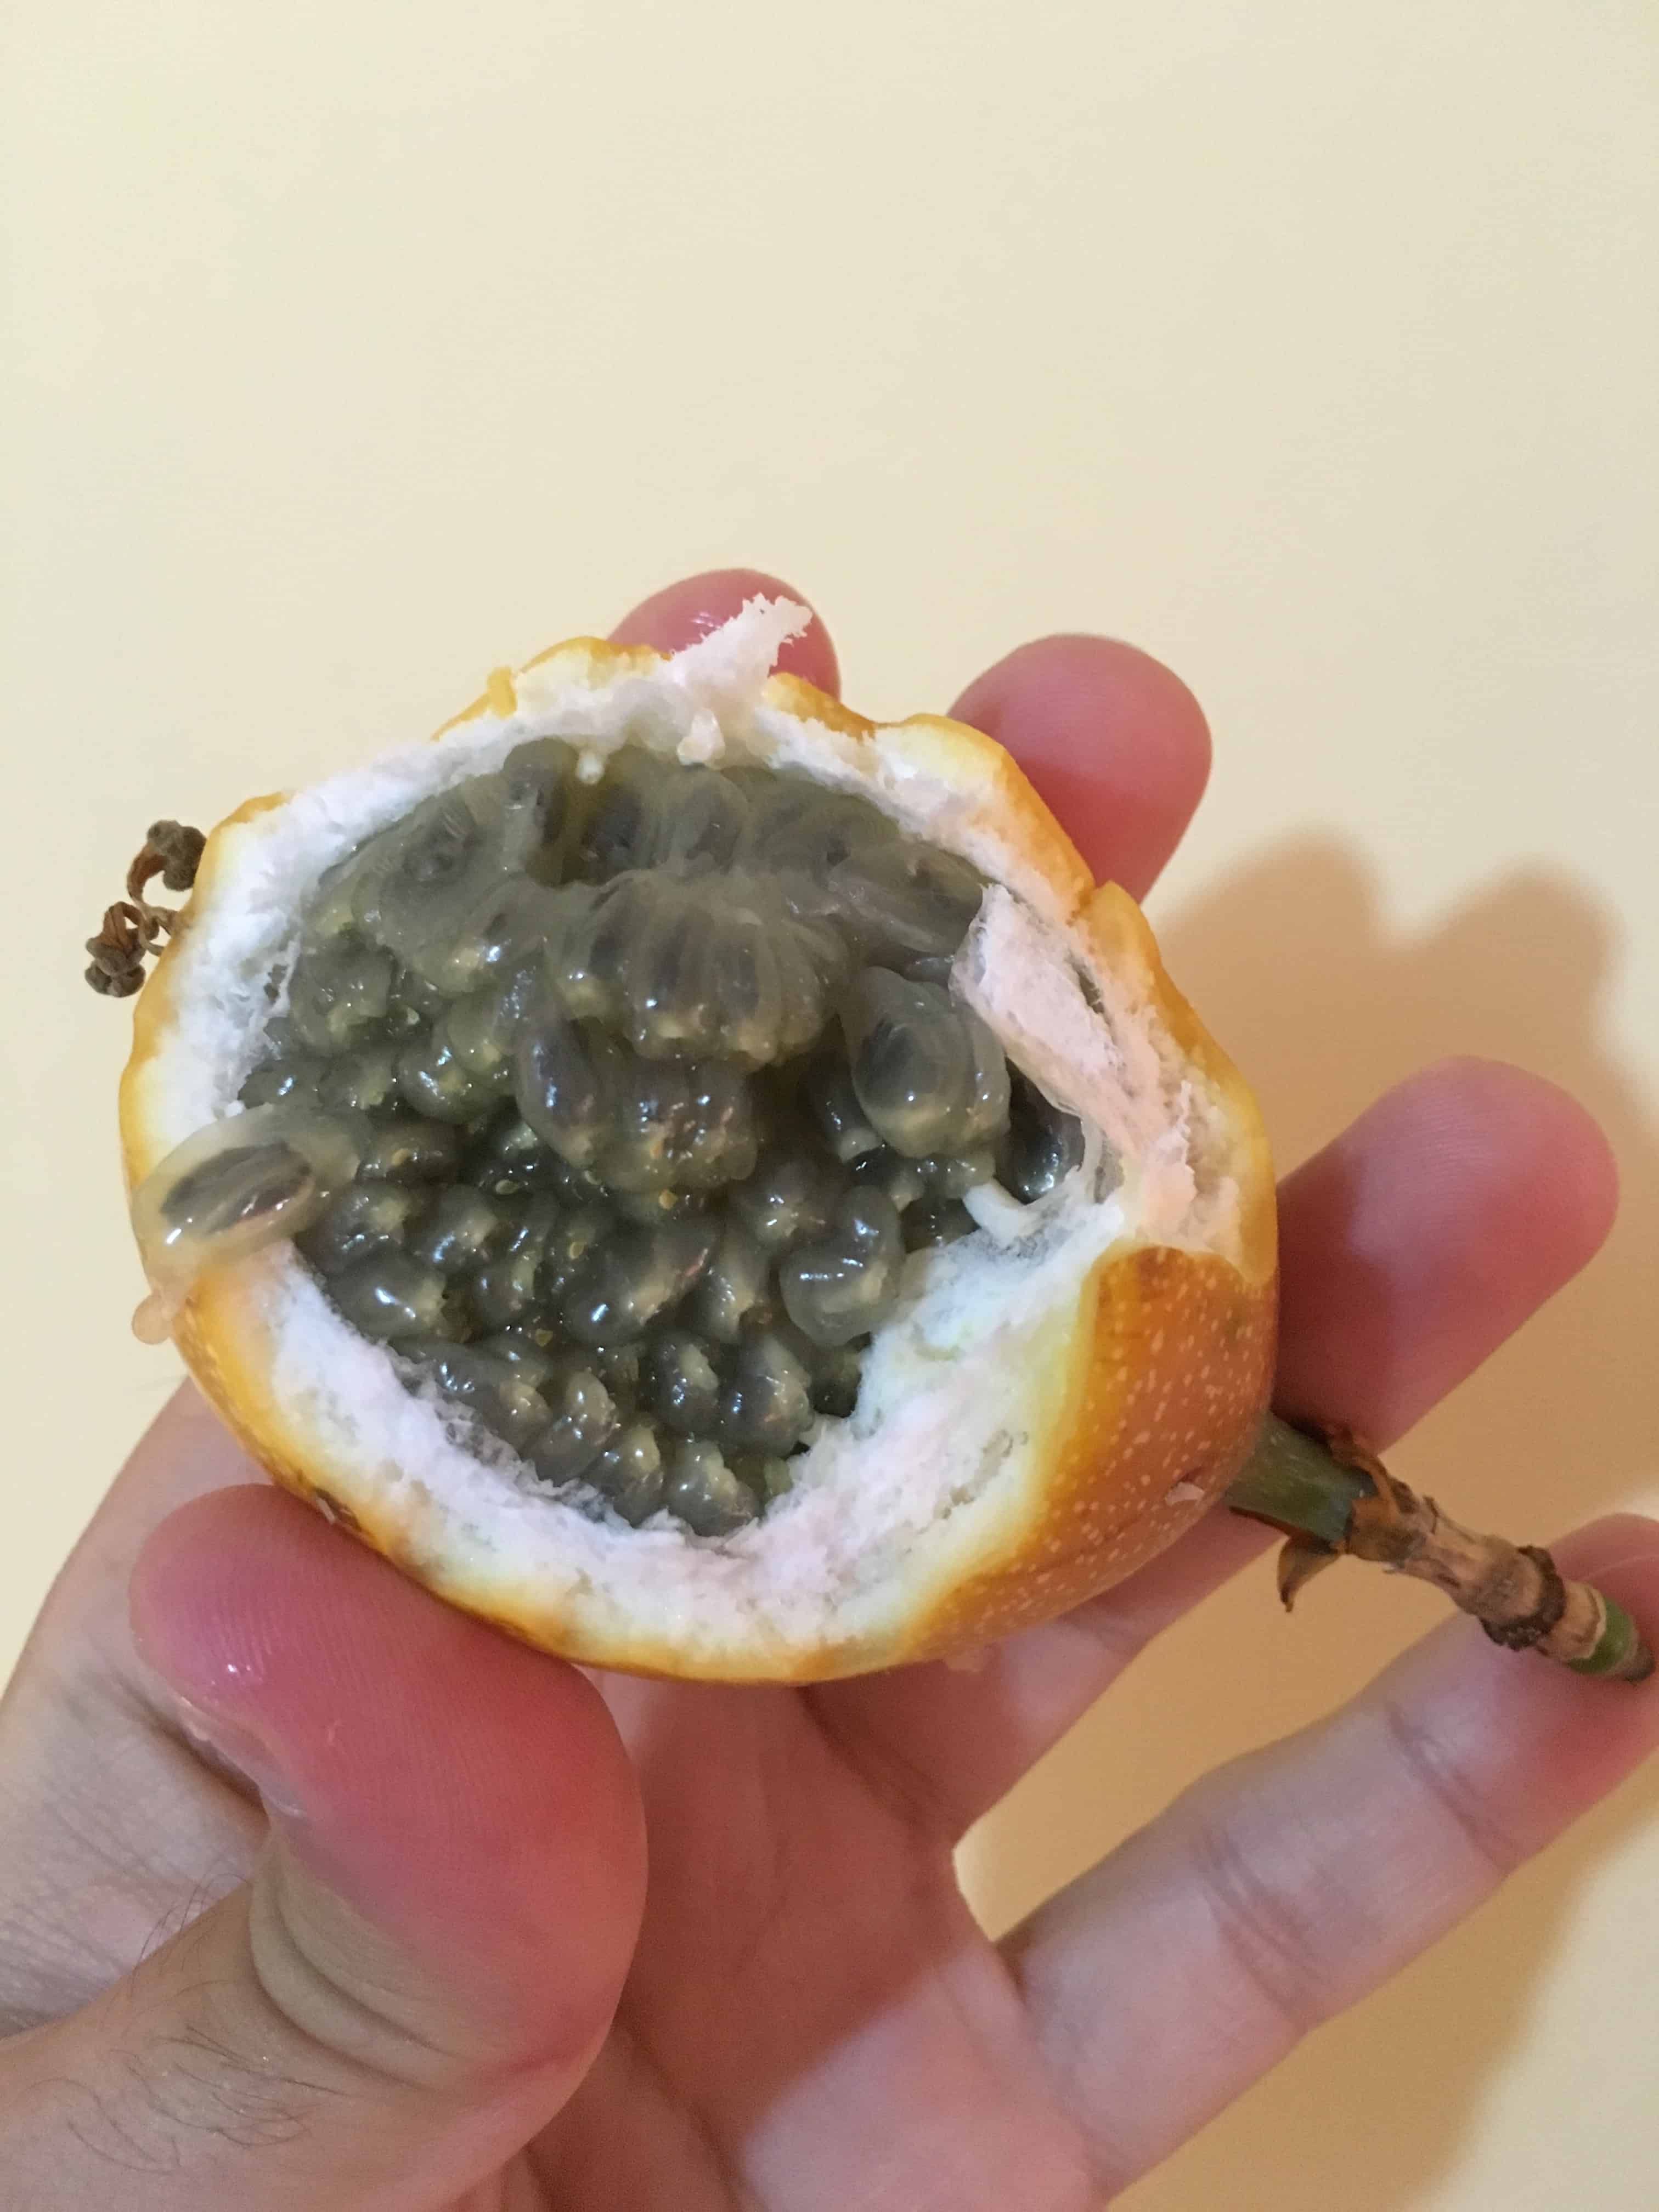 Granadilla Fruit in Colombia